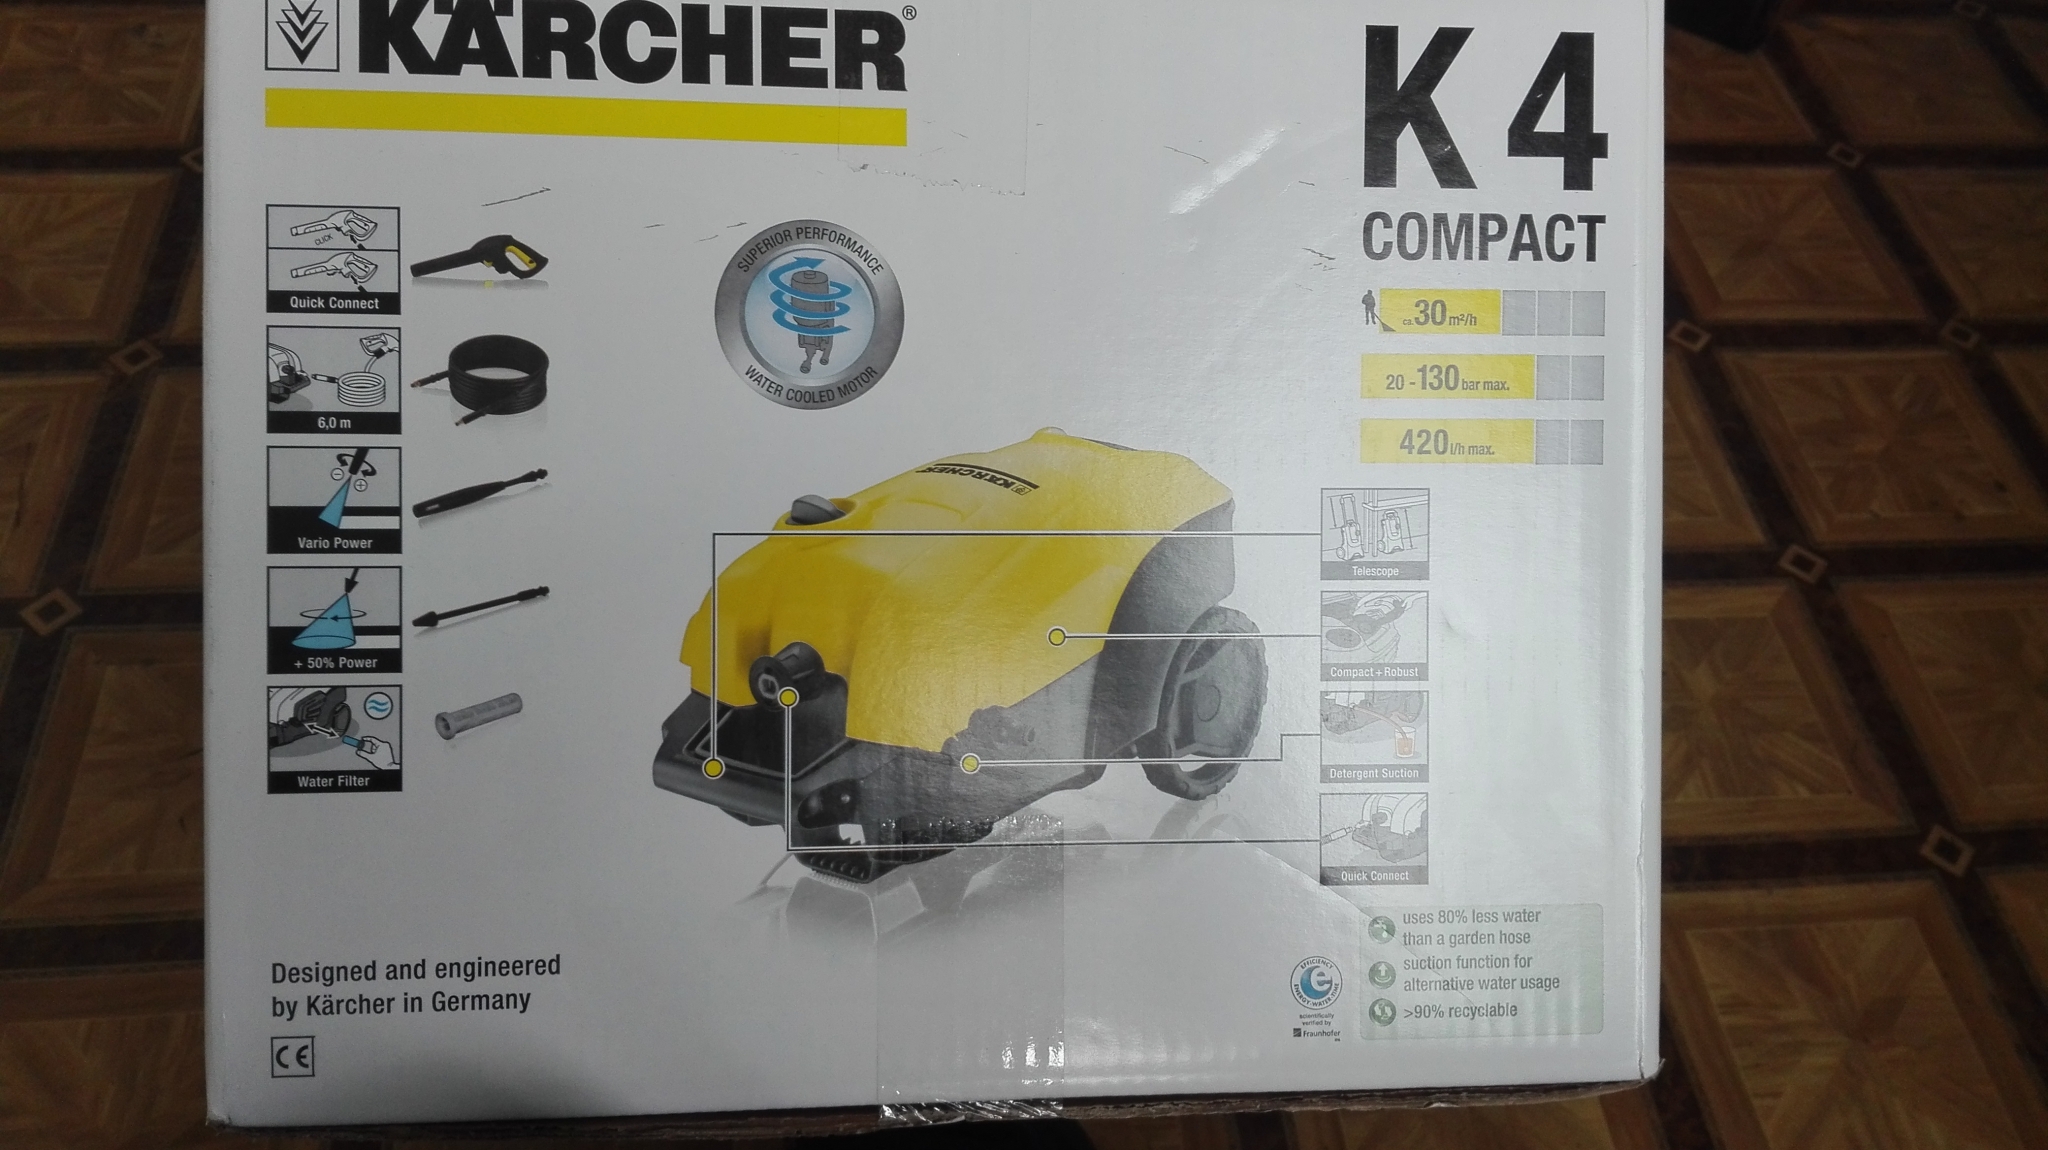 К 4 компакт. Минимойка кёрхер к4 компакт 1,637- 50000 комплект поставки. Мойка высокого давления Karcher k 4 Compact (1.637-310.0) 1.8 КВТ. Кадиакс компакт 4. Керхер л4 компакт фото коробки.